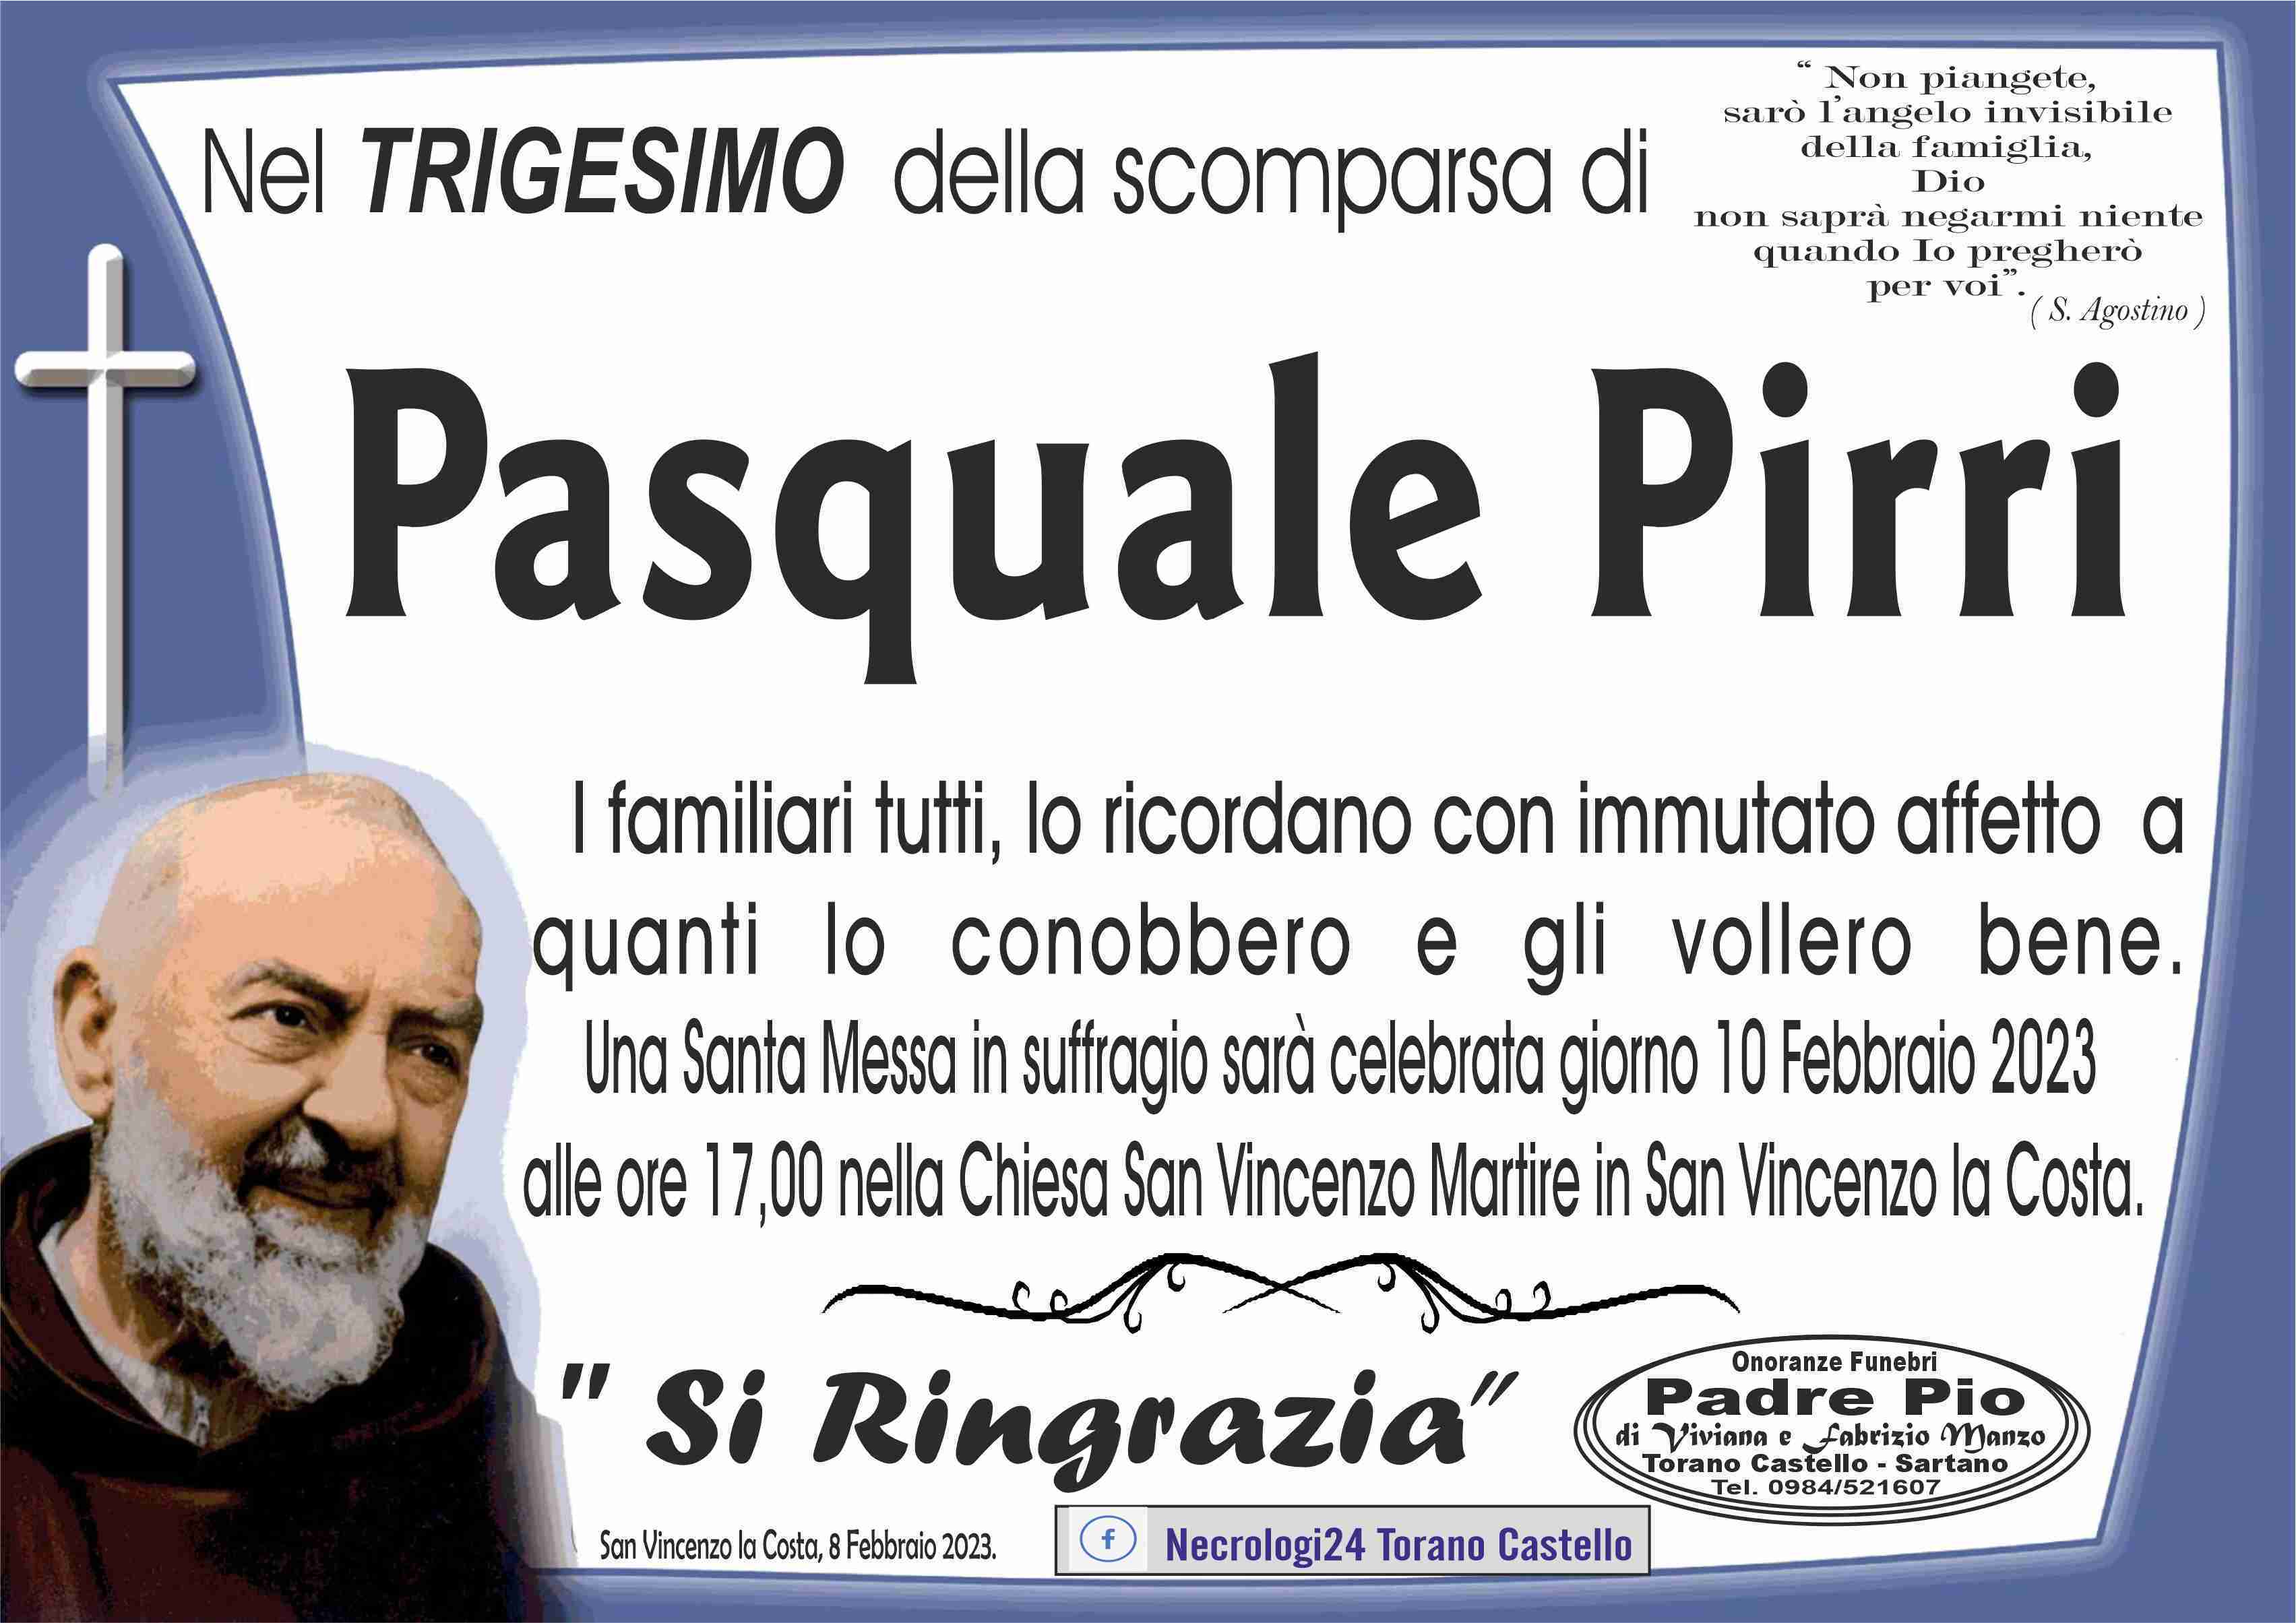 Pasquale Pirri